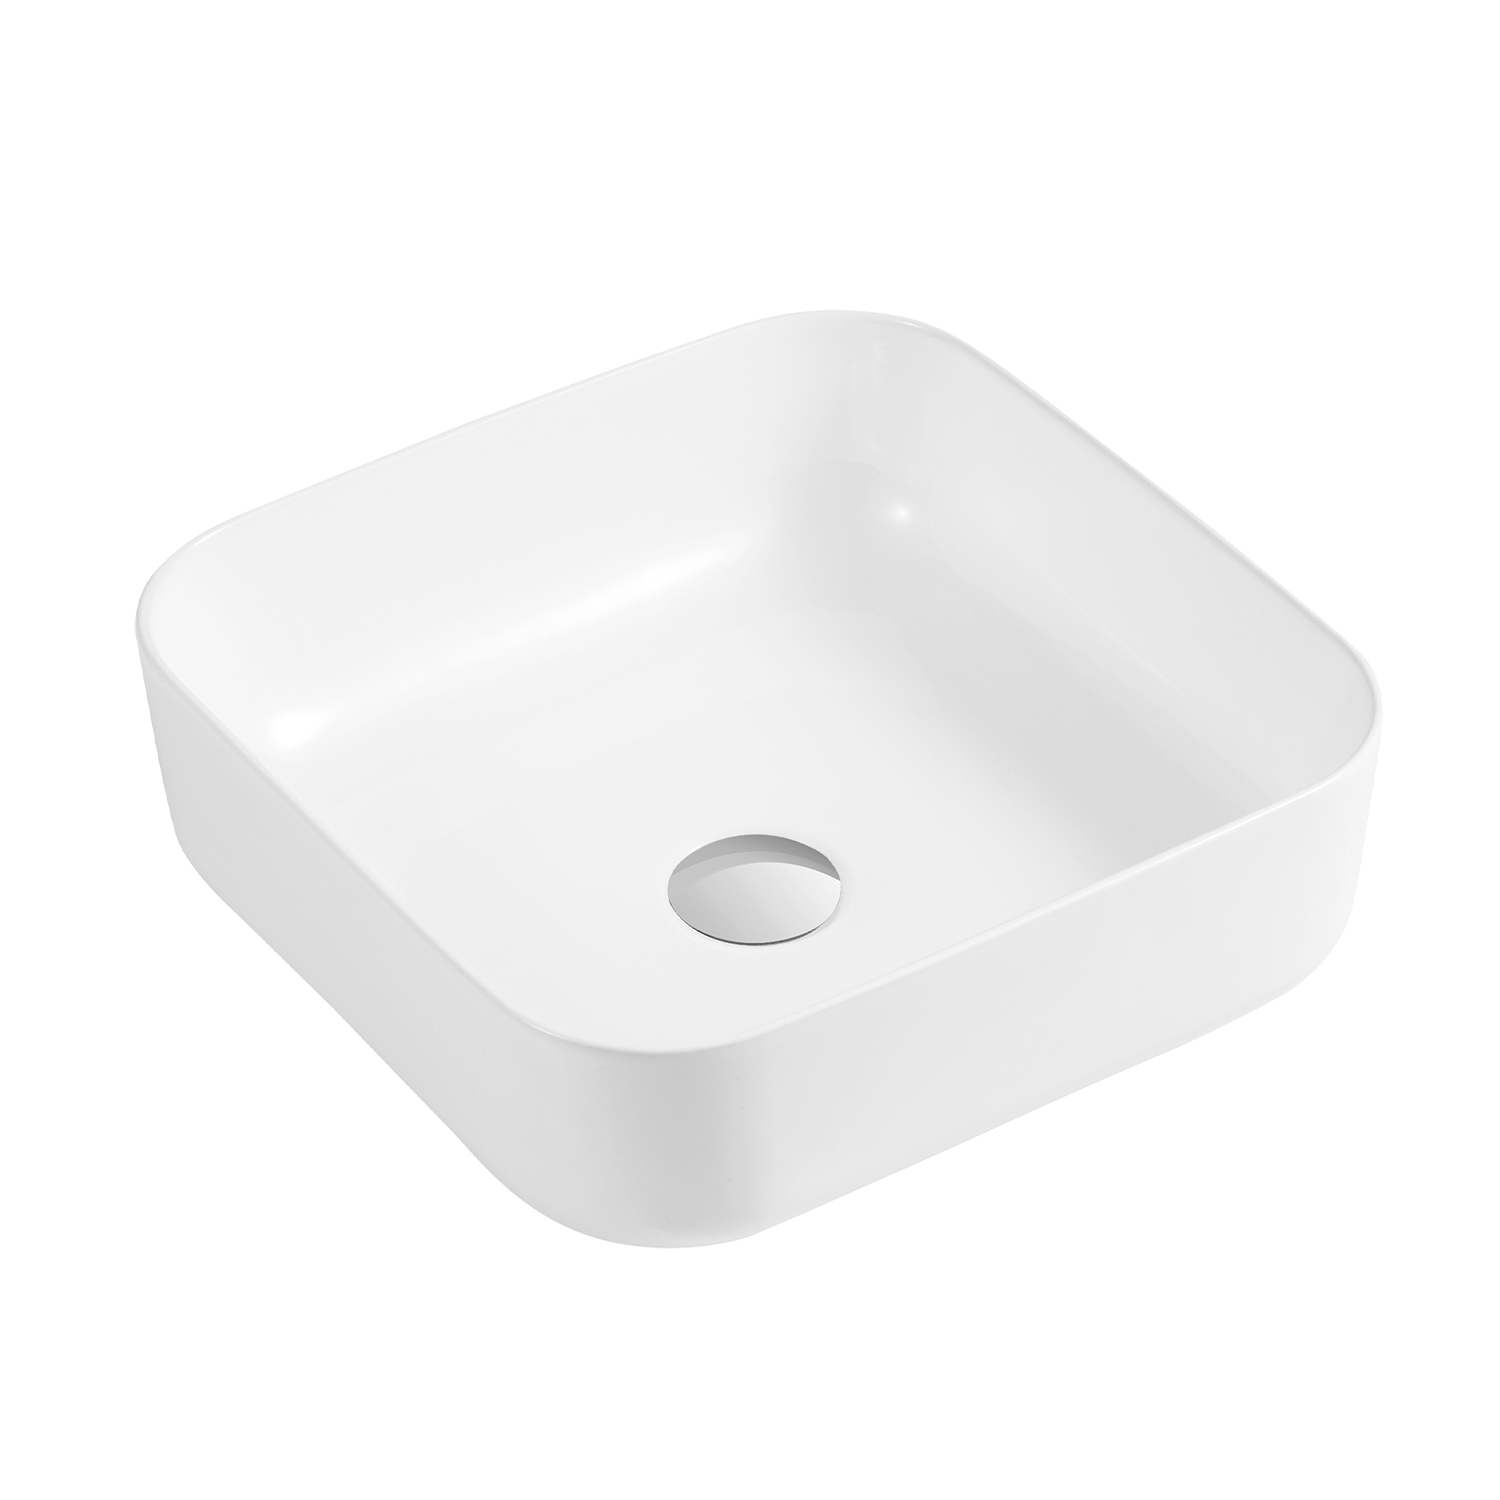 DAX - Lavabo cuadrado de cerámica para baño, blanco brillante - (15" x 15") (DAX-CL1282-WG)